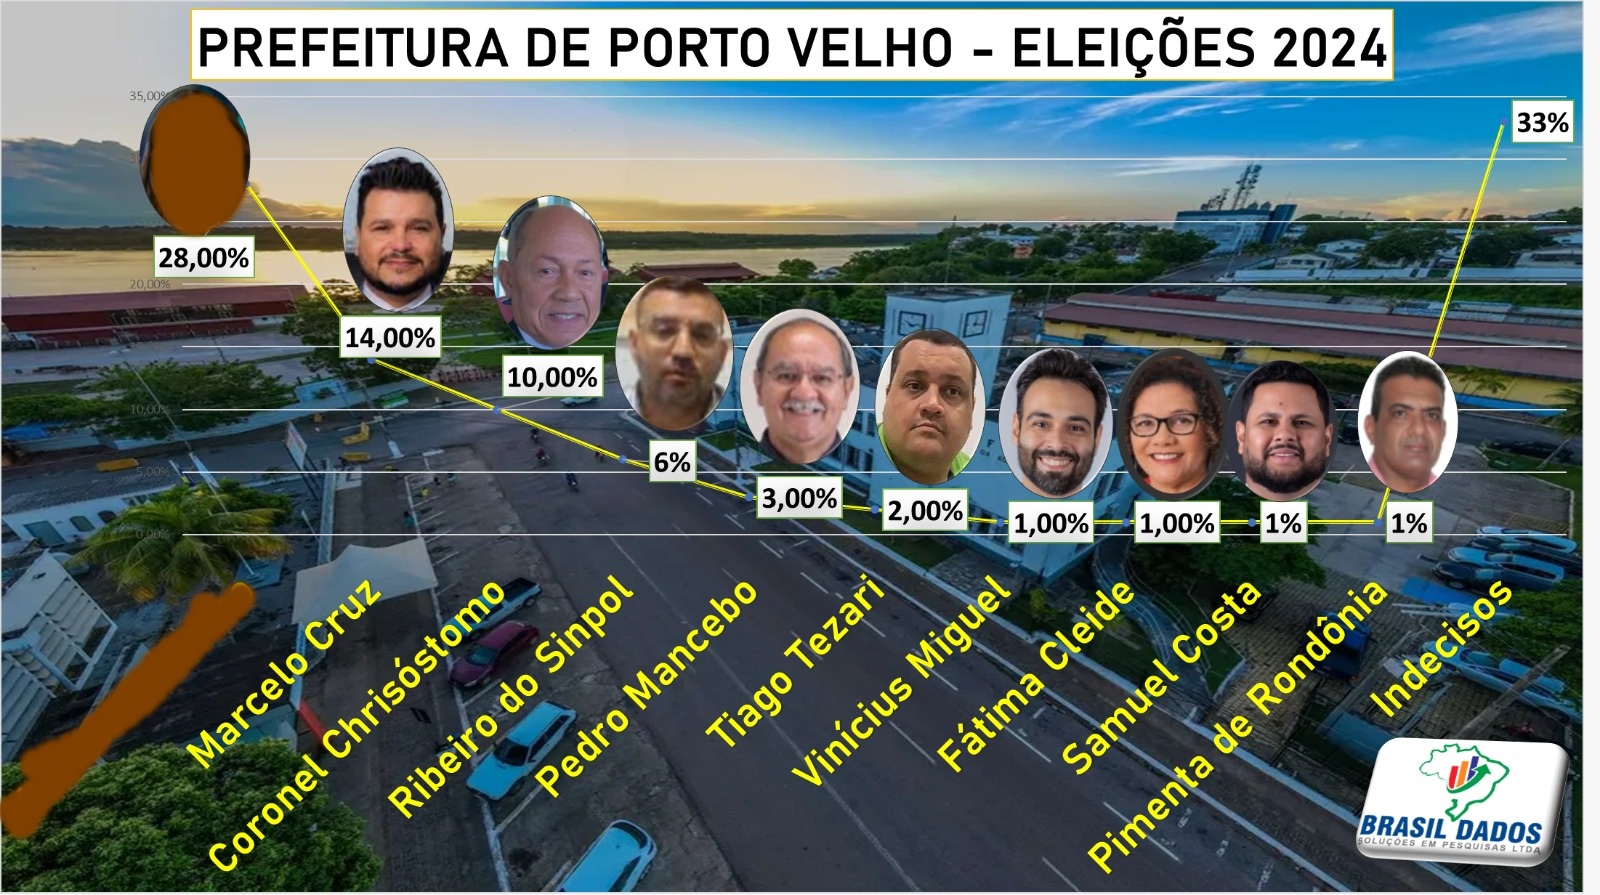 NOVA PESQUISA: XXXXXXXXXXXXX começa a despontar na preferência do eleitor de Porto Velho